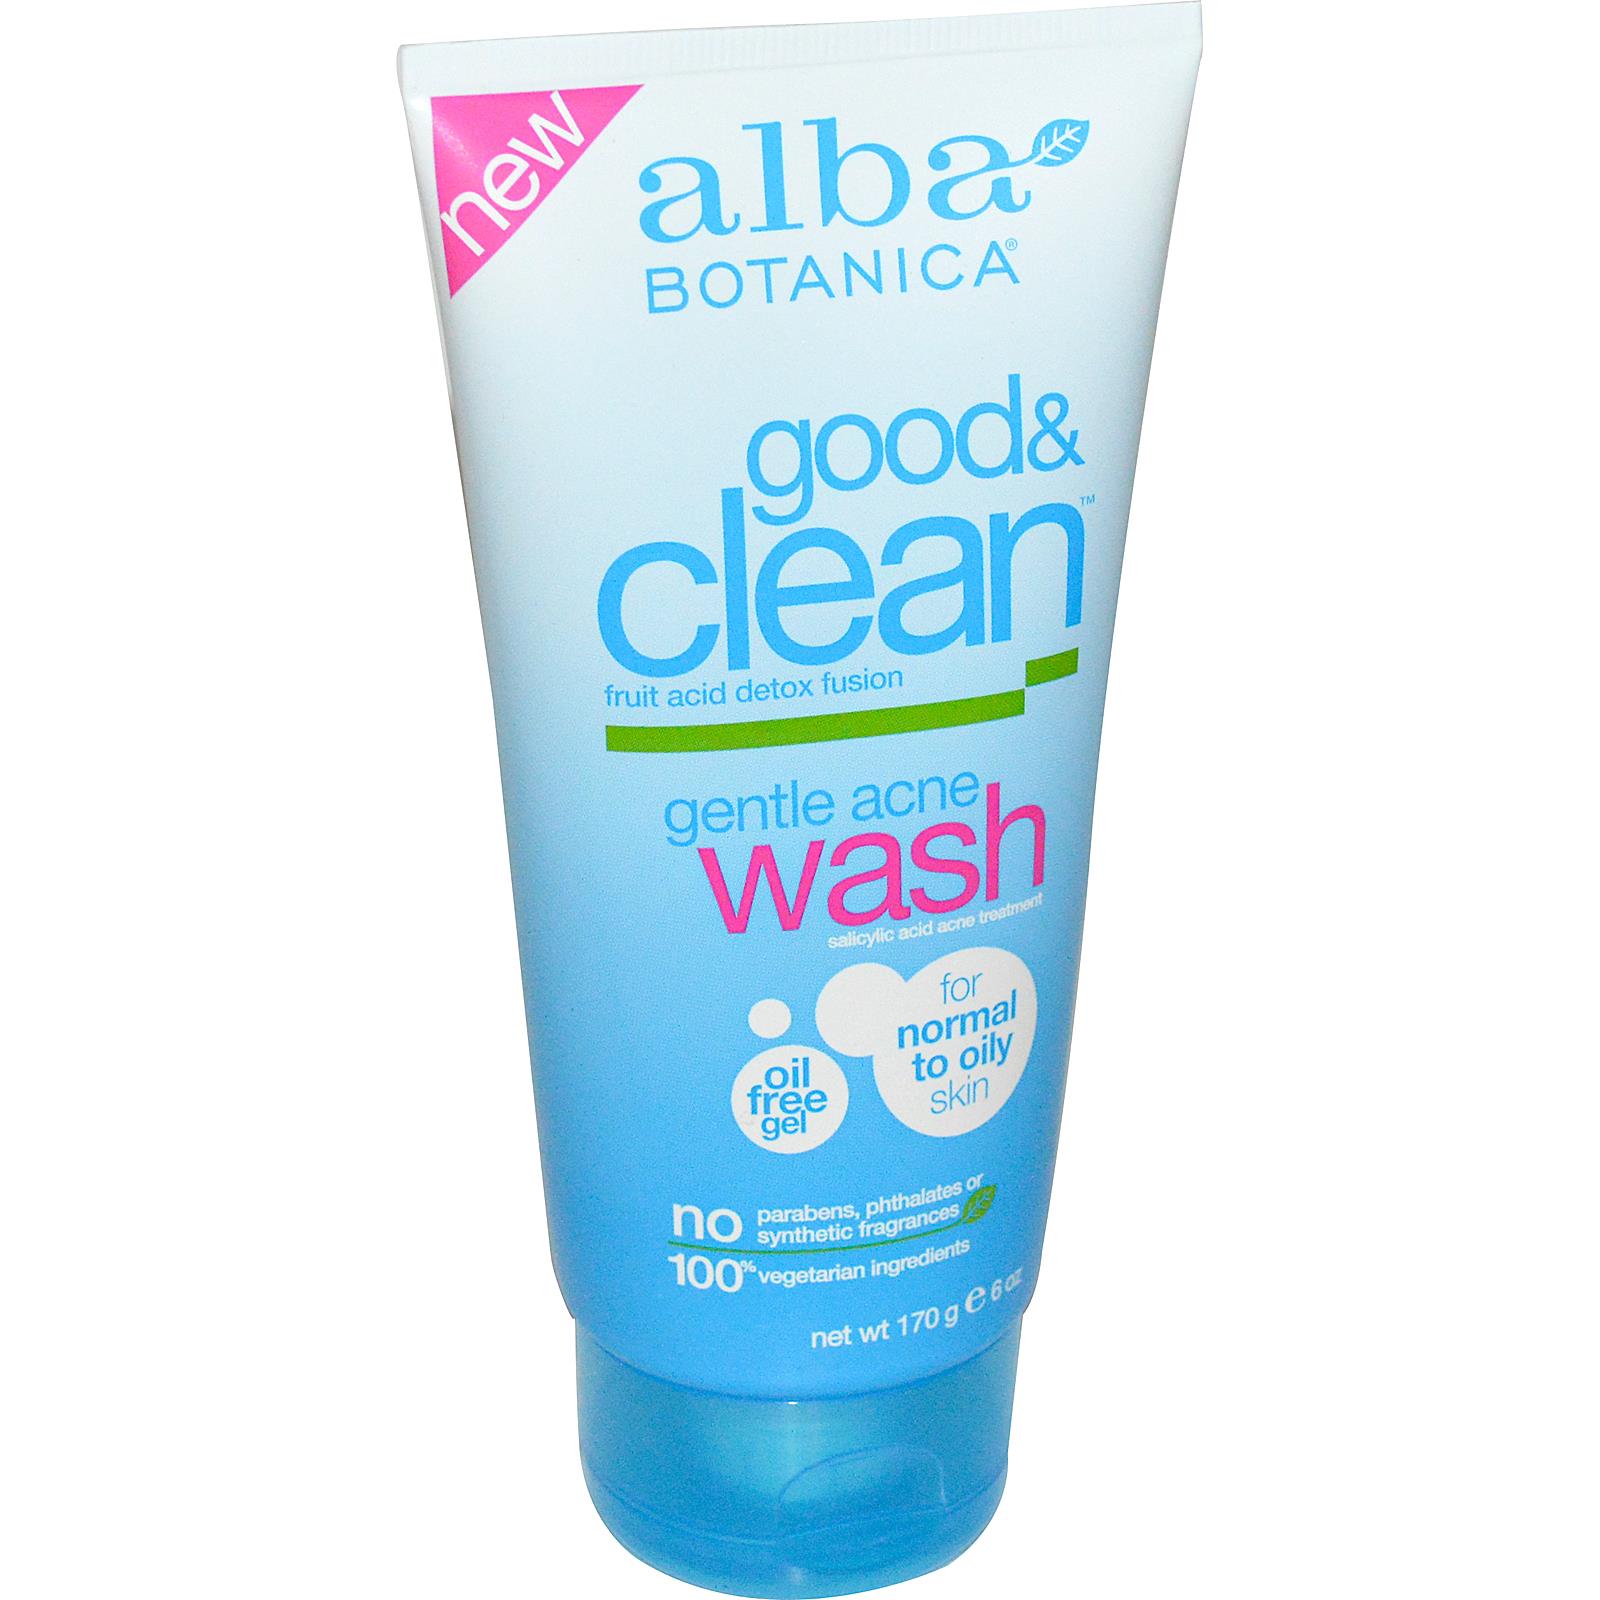 Sữa rửa mặt Alba Botanica là một loại mỹ phẩm cho da dầu và da nhờn